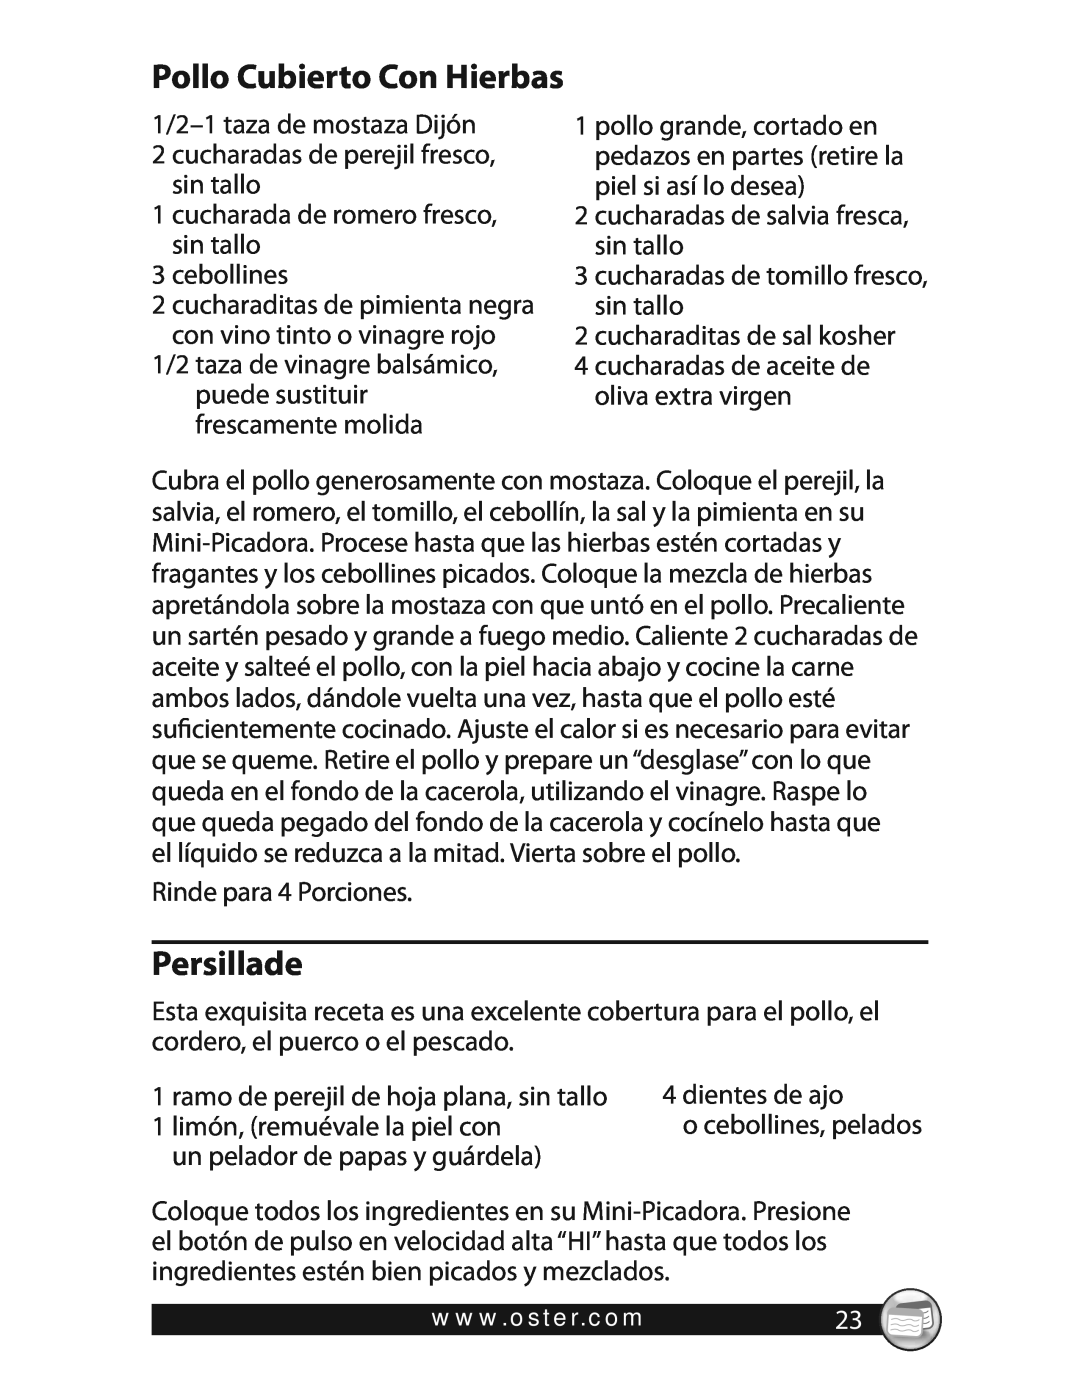 Oster 3320 warranty Pollo Cubierto Con Hierbas, Persillade 